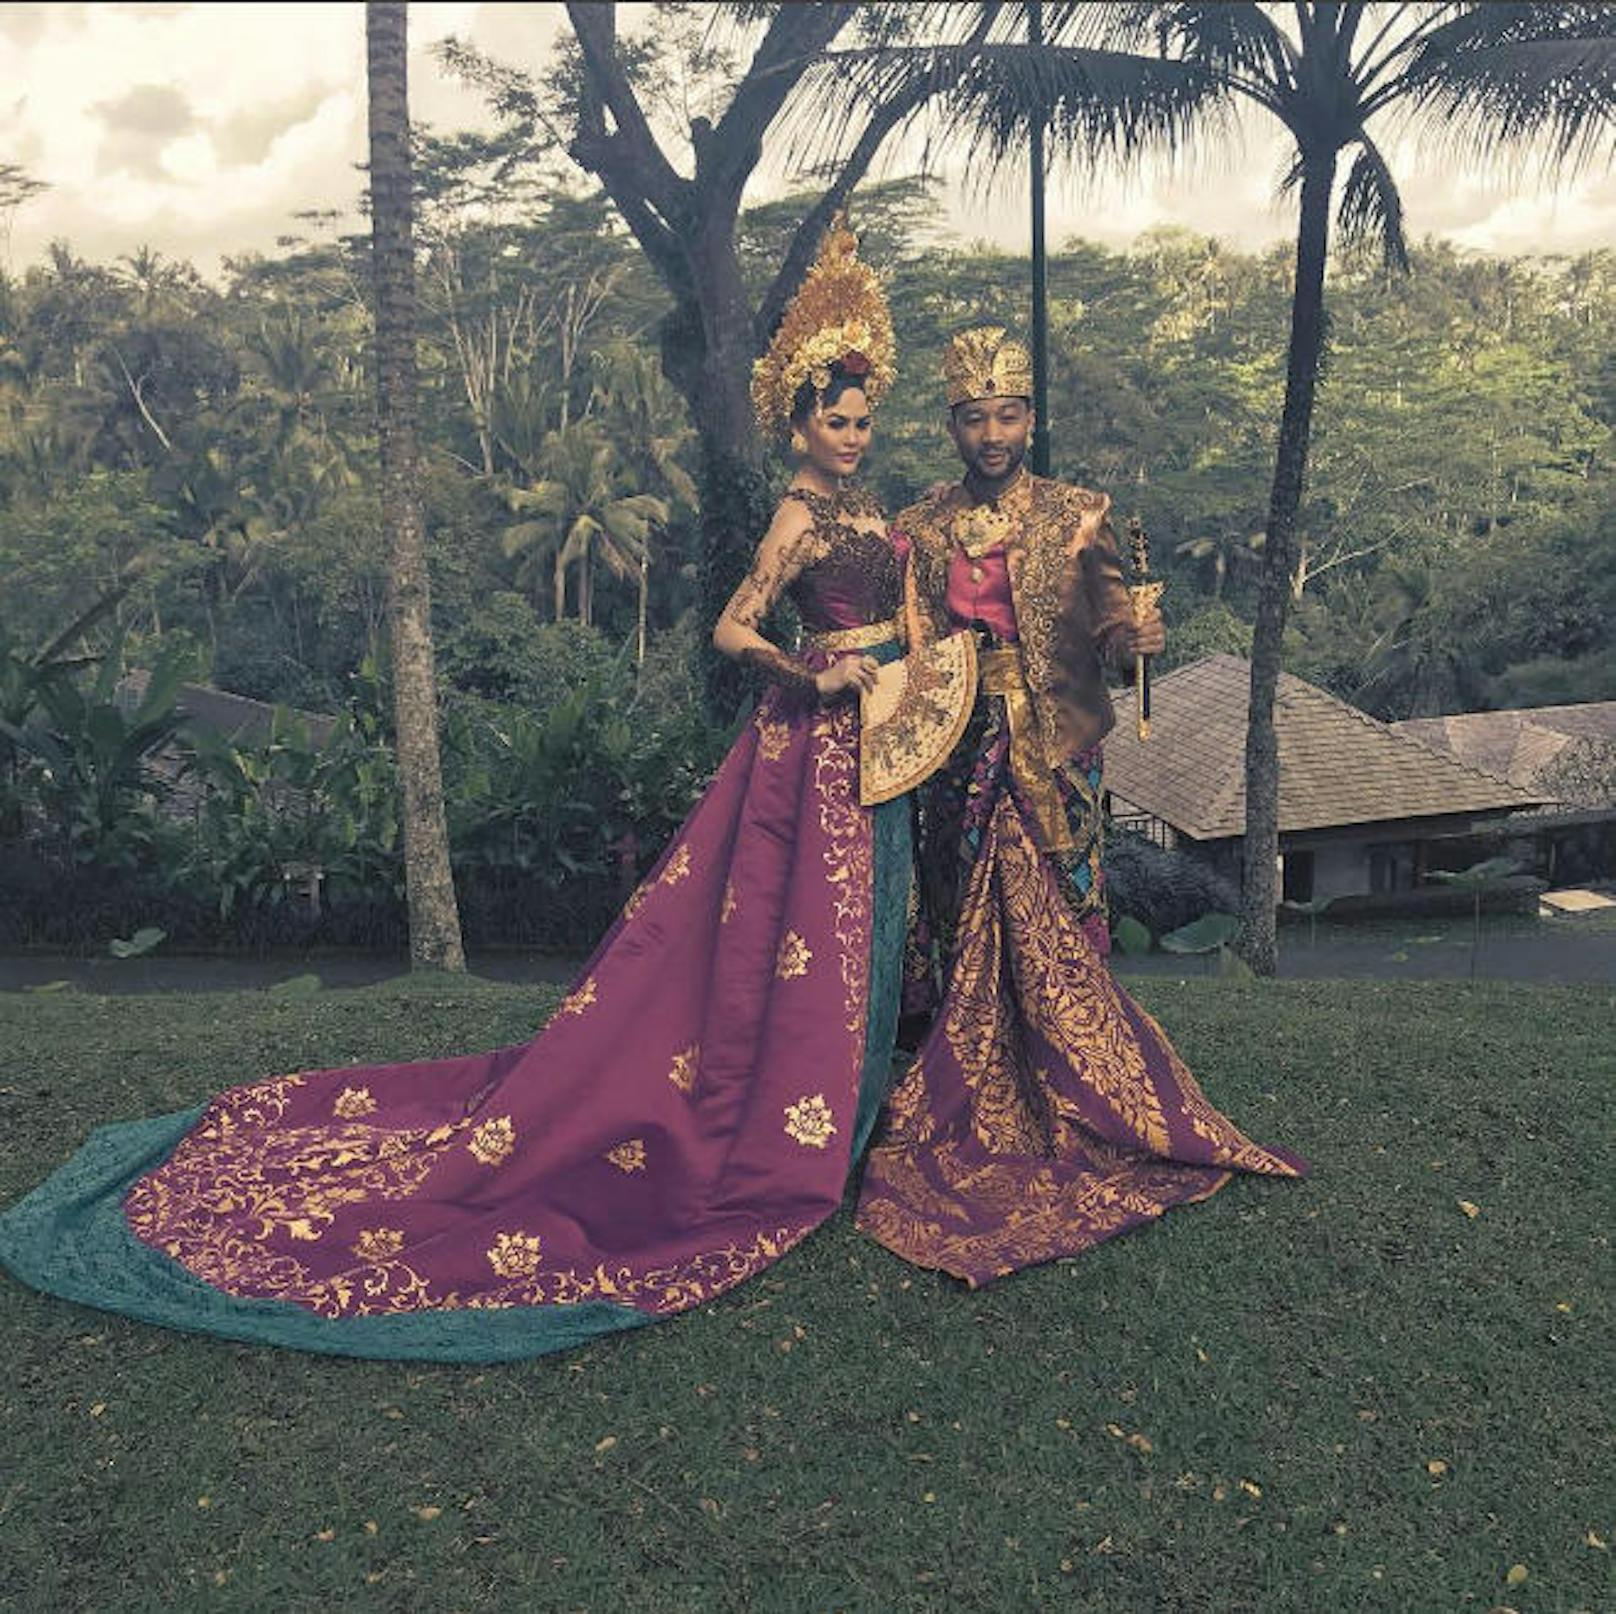 16.07.2017: Chrissy Teigen und John Legend urlauben auf Bali und durften dort im traditionellen Outfit für ein paar Fotos posieren.